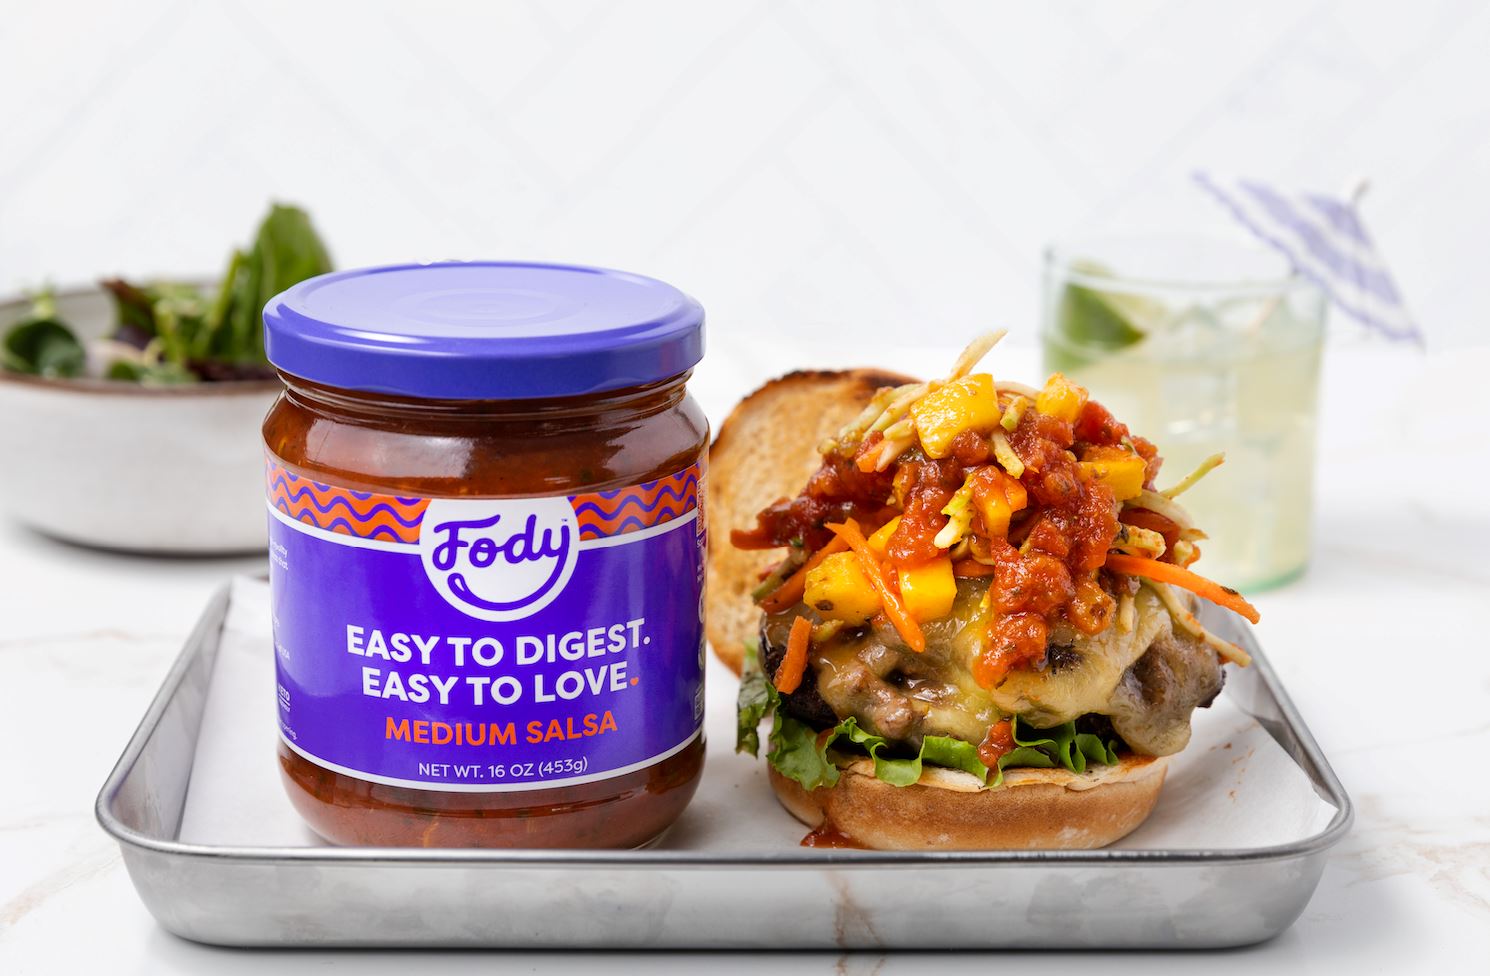 An image of Fody’s Jamaican jerk burger on a tin tray next to a jar of Fody’s medium salsa.